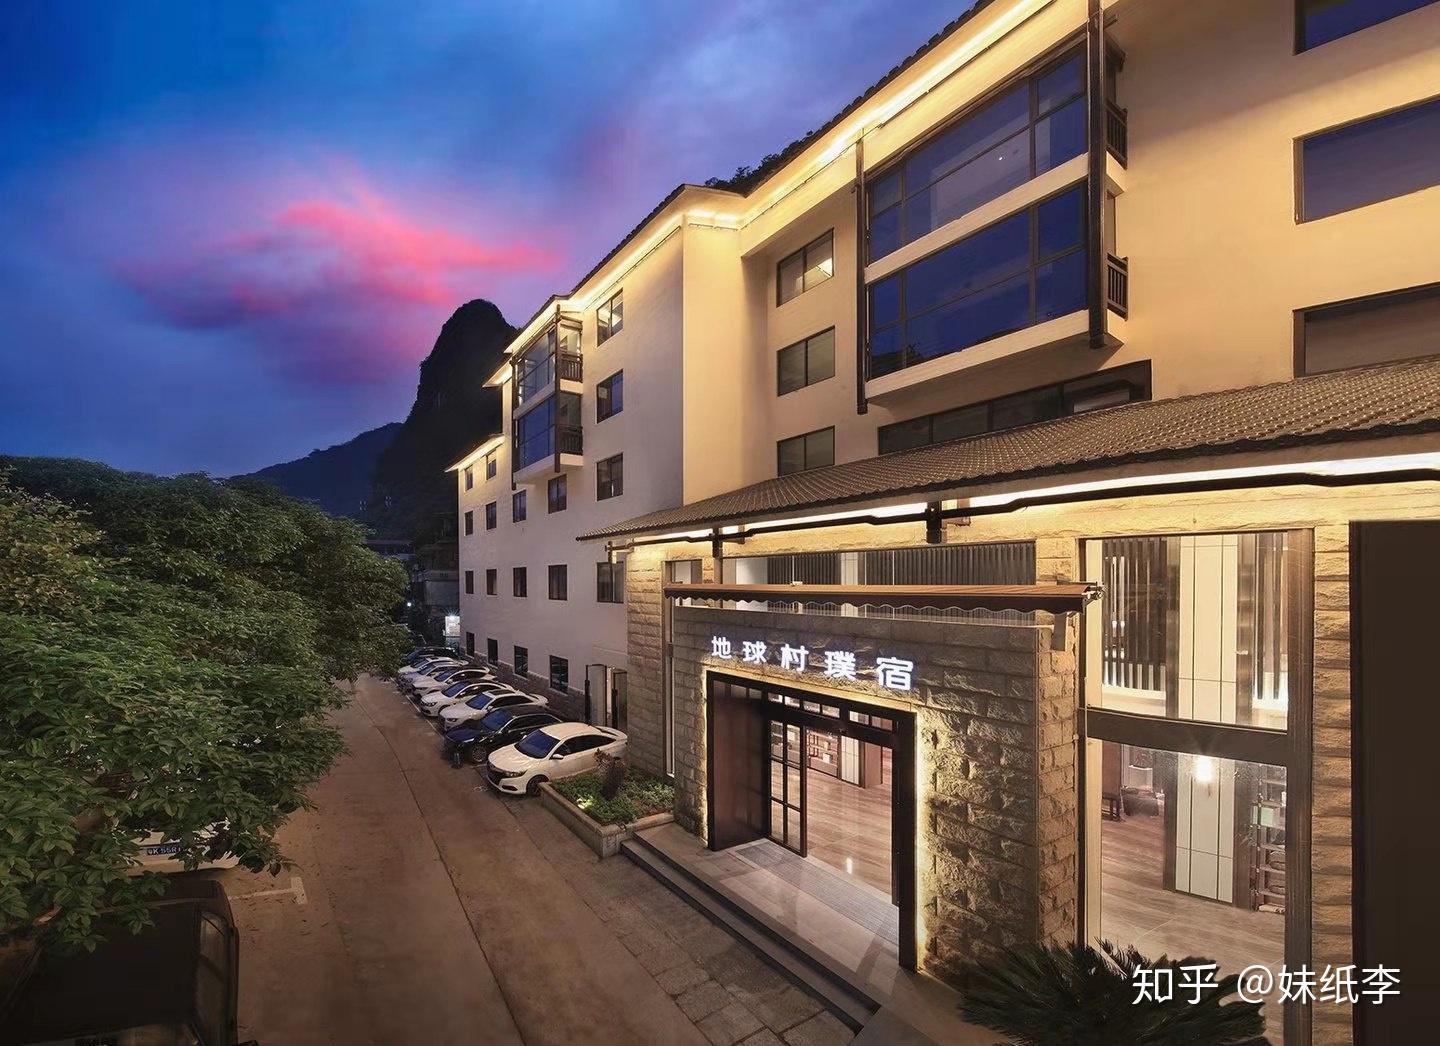 新西街国际大酒店 in Guilin | 2023 Updated prices, deals - Klook United States